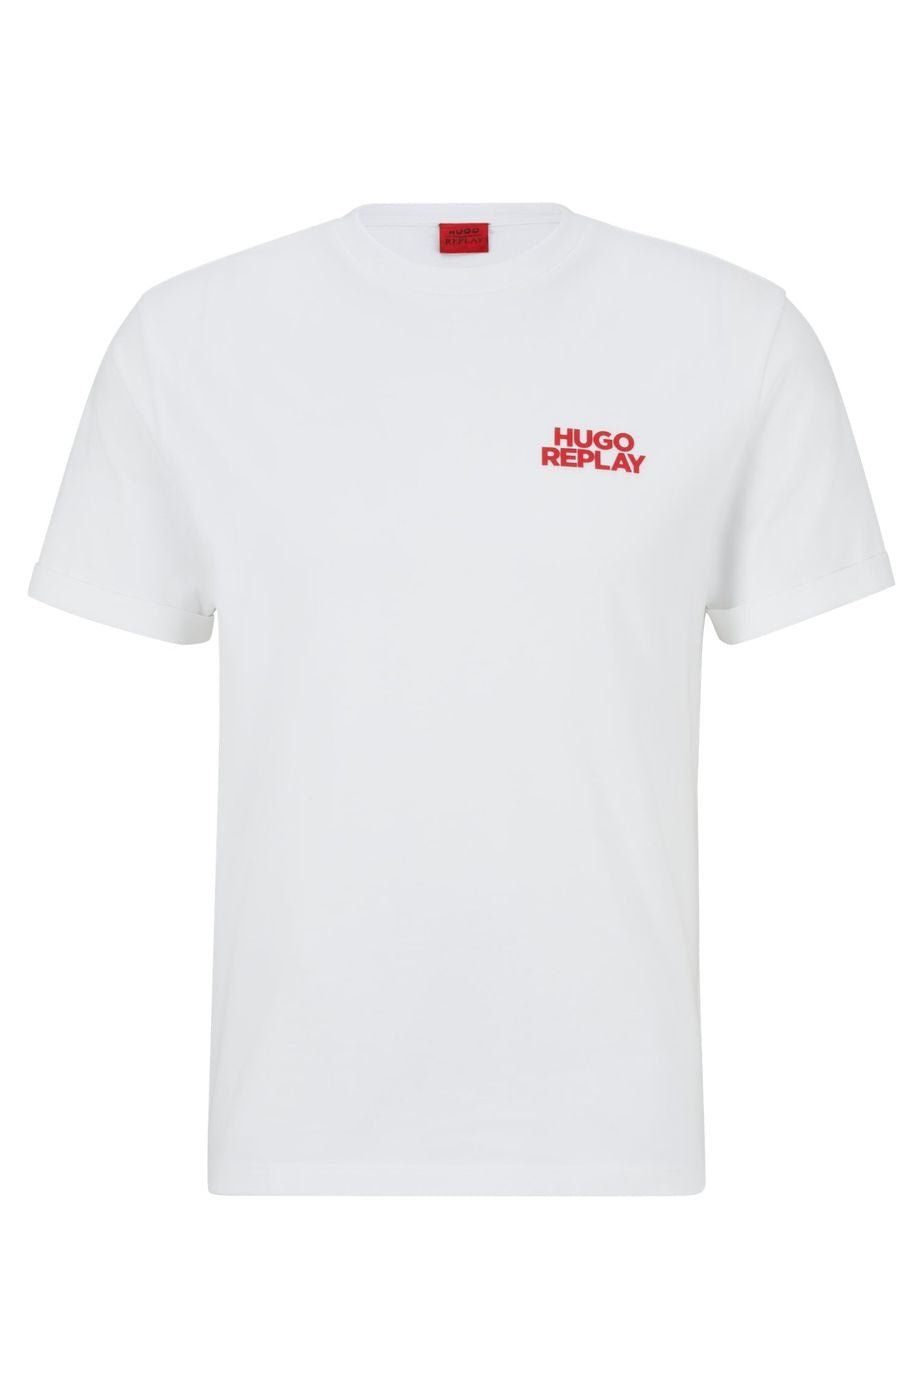 T-shirt HUGO BOSS x Replay - Crush Store